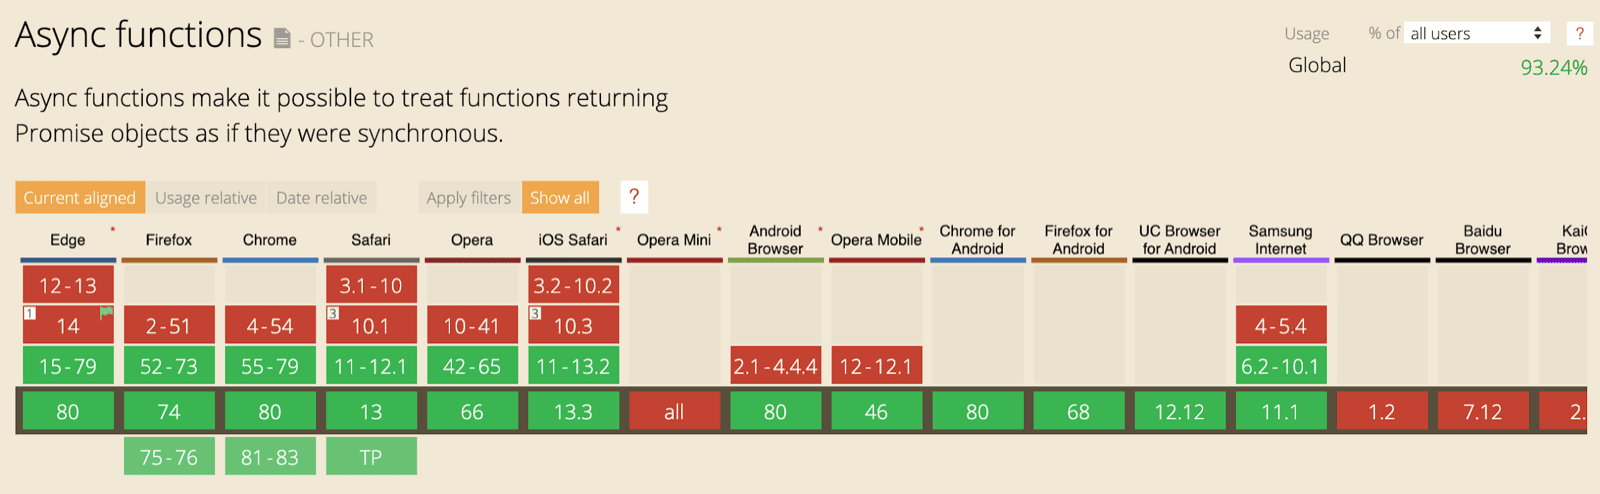 La tabella di supporto di CanIUse per le funzioni asincrone che mostrano il supporto in tutti i principali browser.